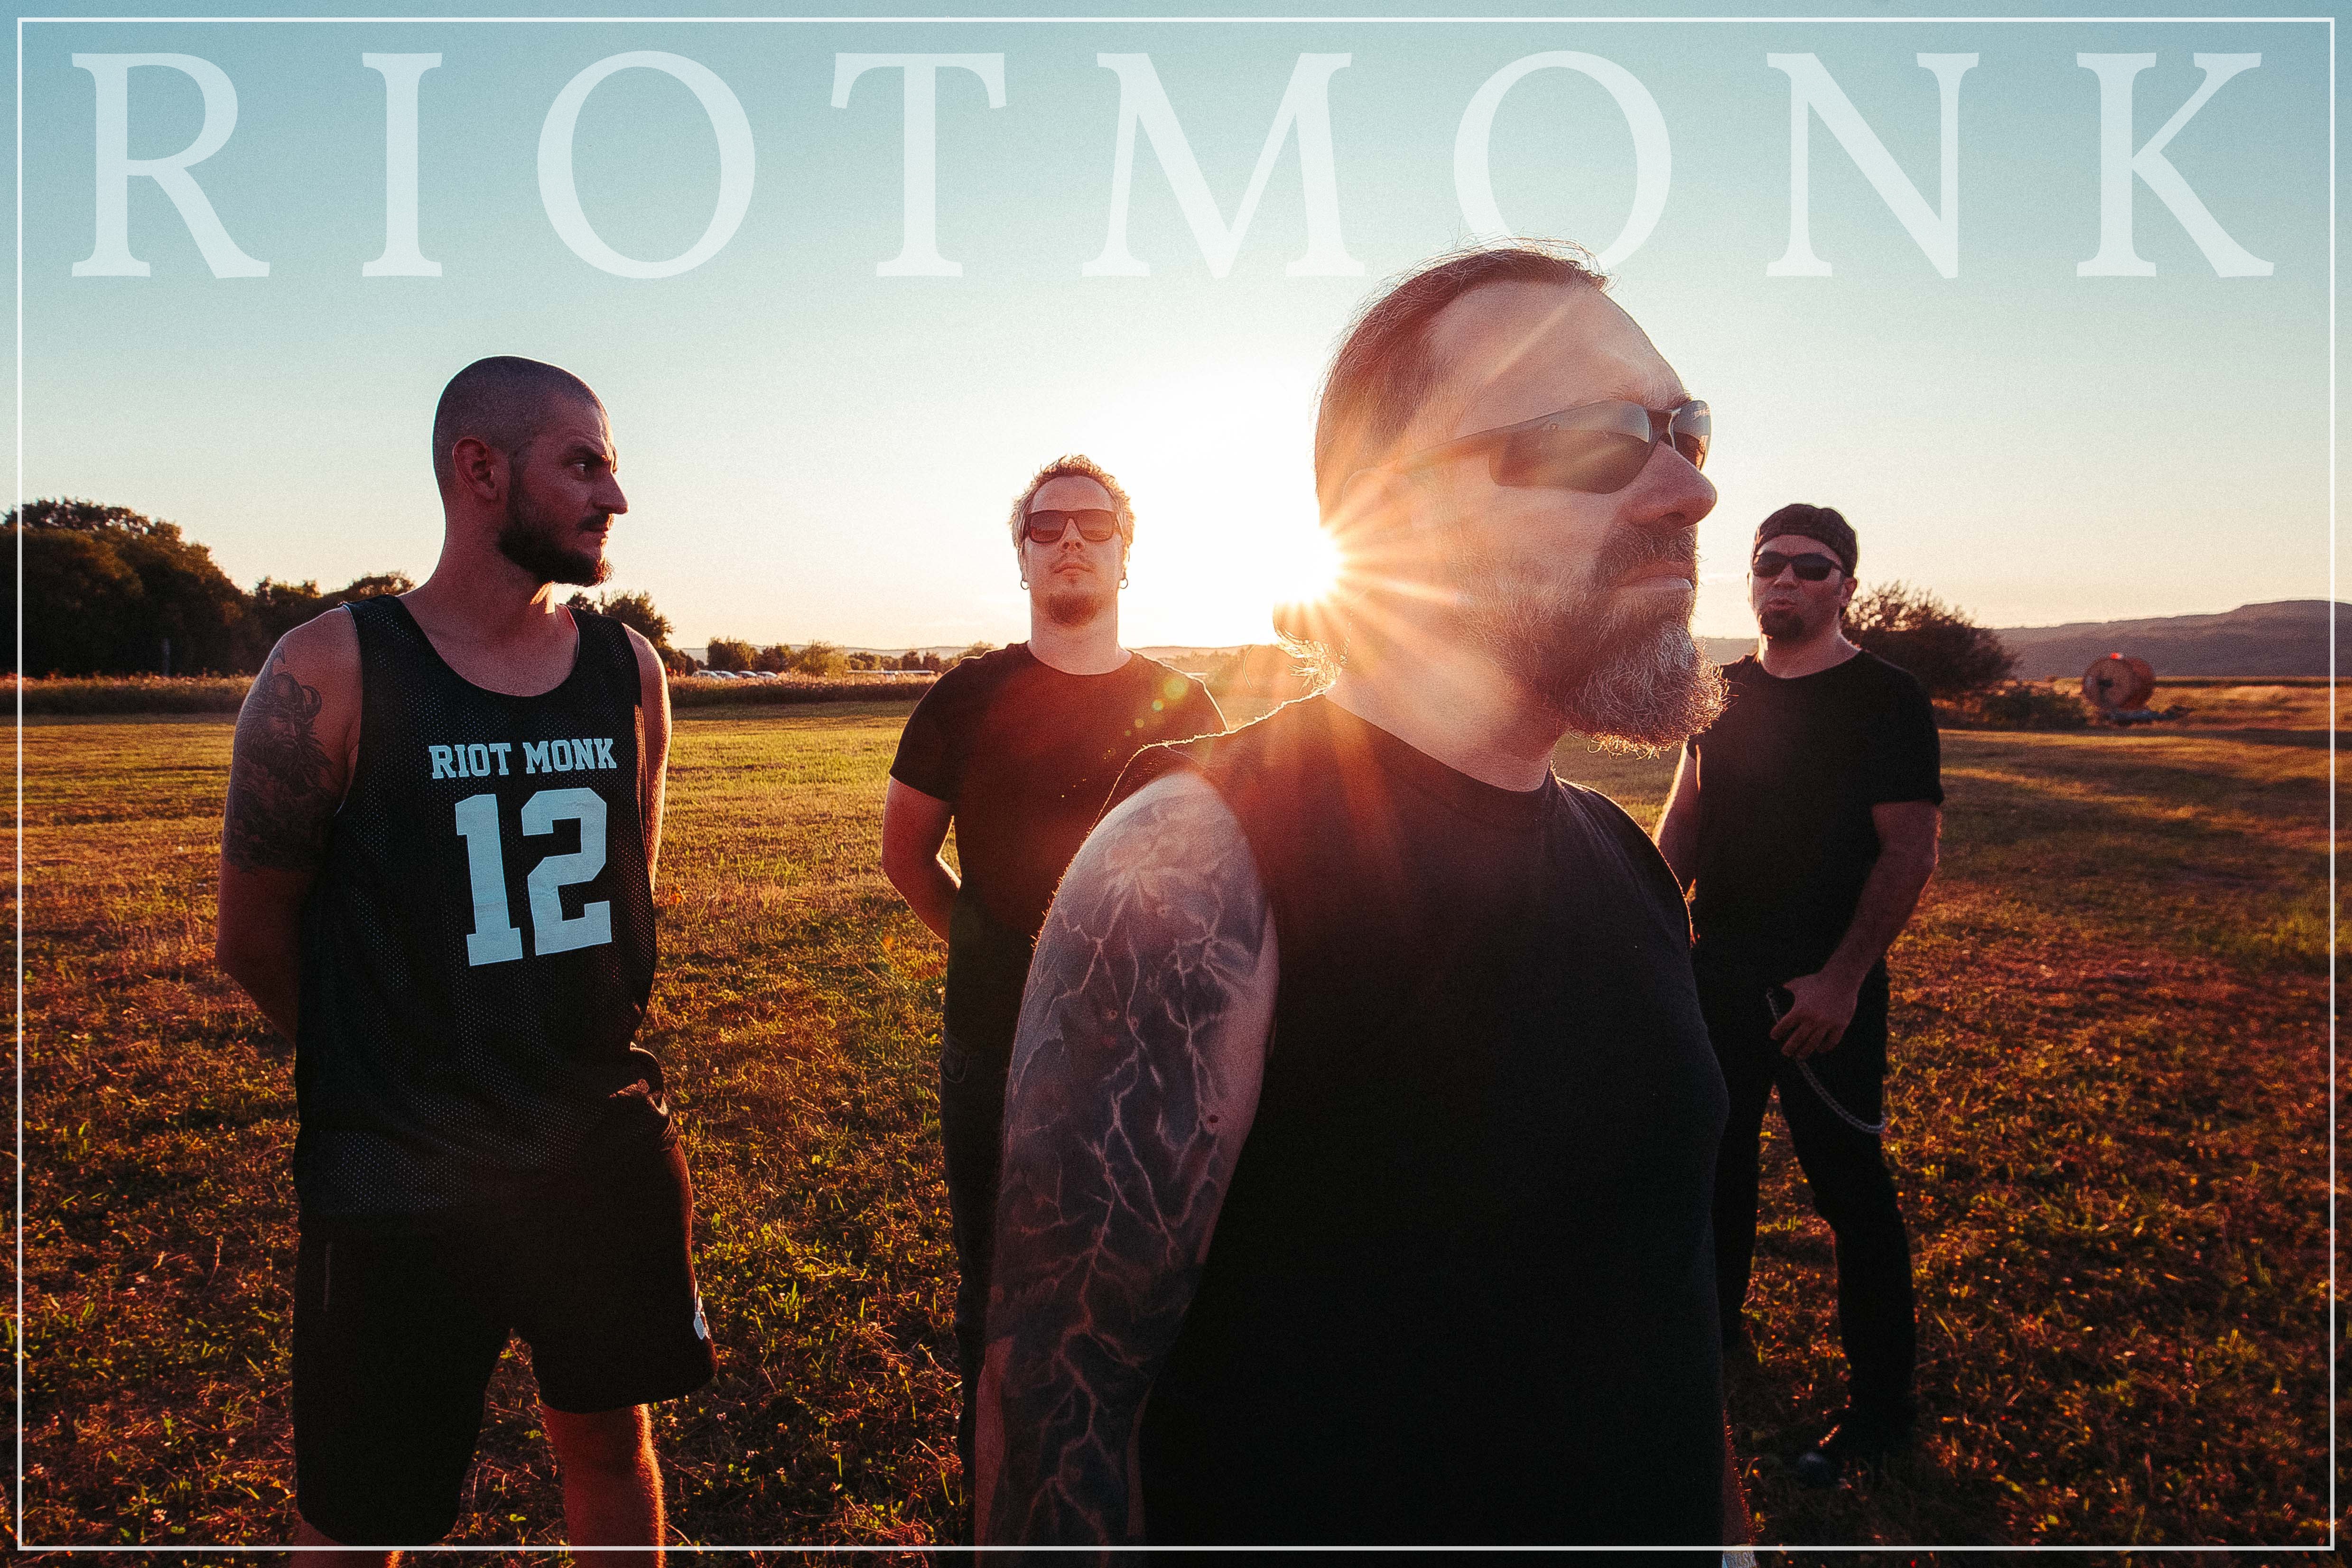 Trupa Riot Monk a lansat primul său album, ”Aer”: ”Când aduci o jertfă, aceasta îți va fi răsplătită”